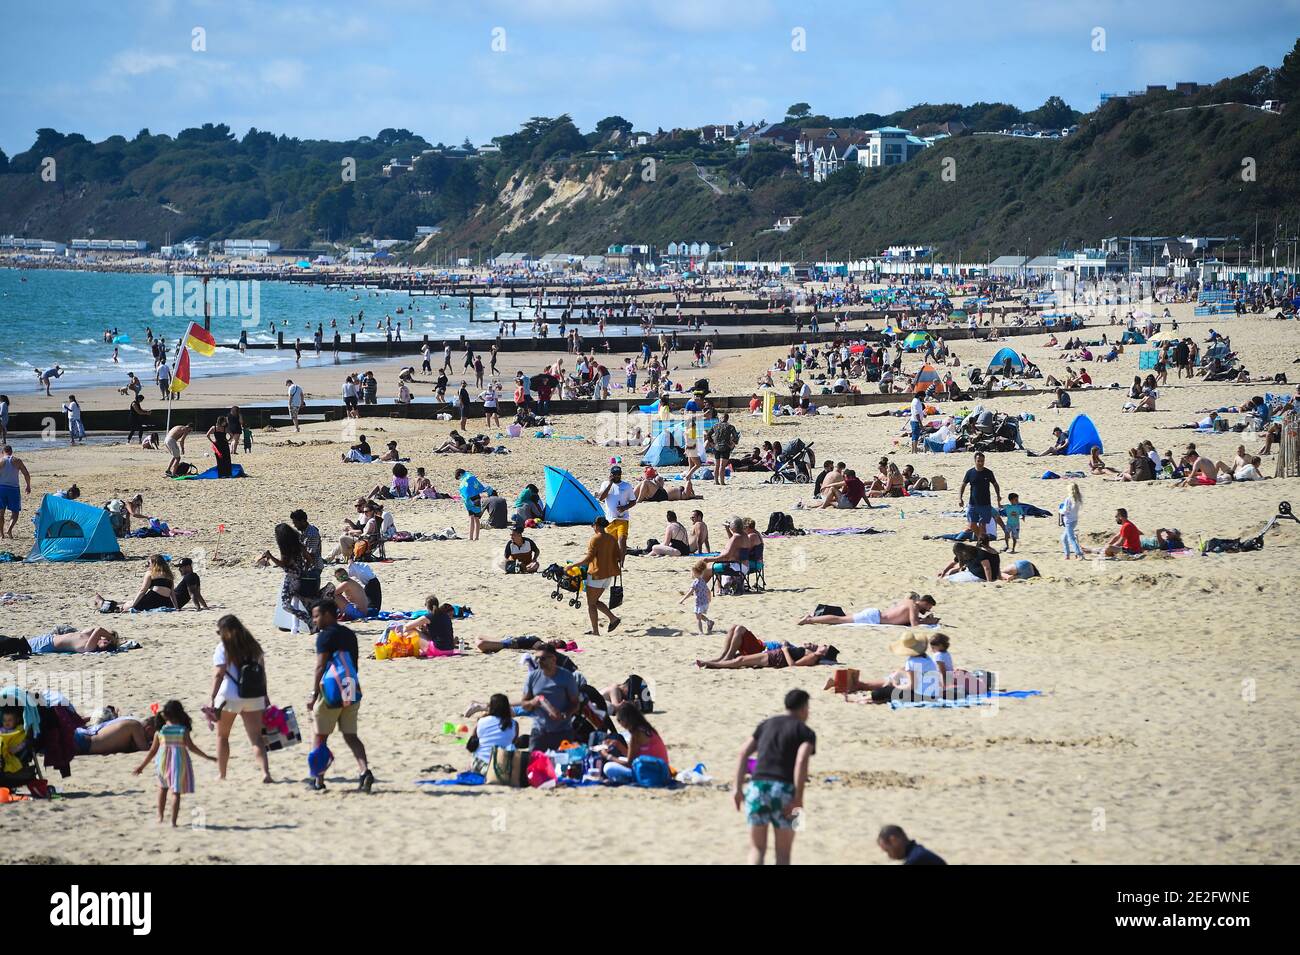 Photo du dossier datée du 13/09/20 personnes sur la plage de Bournemouth. L'année dernière a été la deuxième année la plus chaude jamais enregistrée, avec des températures mondiales près de 1,3C plus chaudes que les temps pr-industriels, ont déclaré des scientifiques britanniques. Banque D'Images